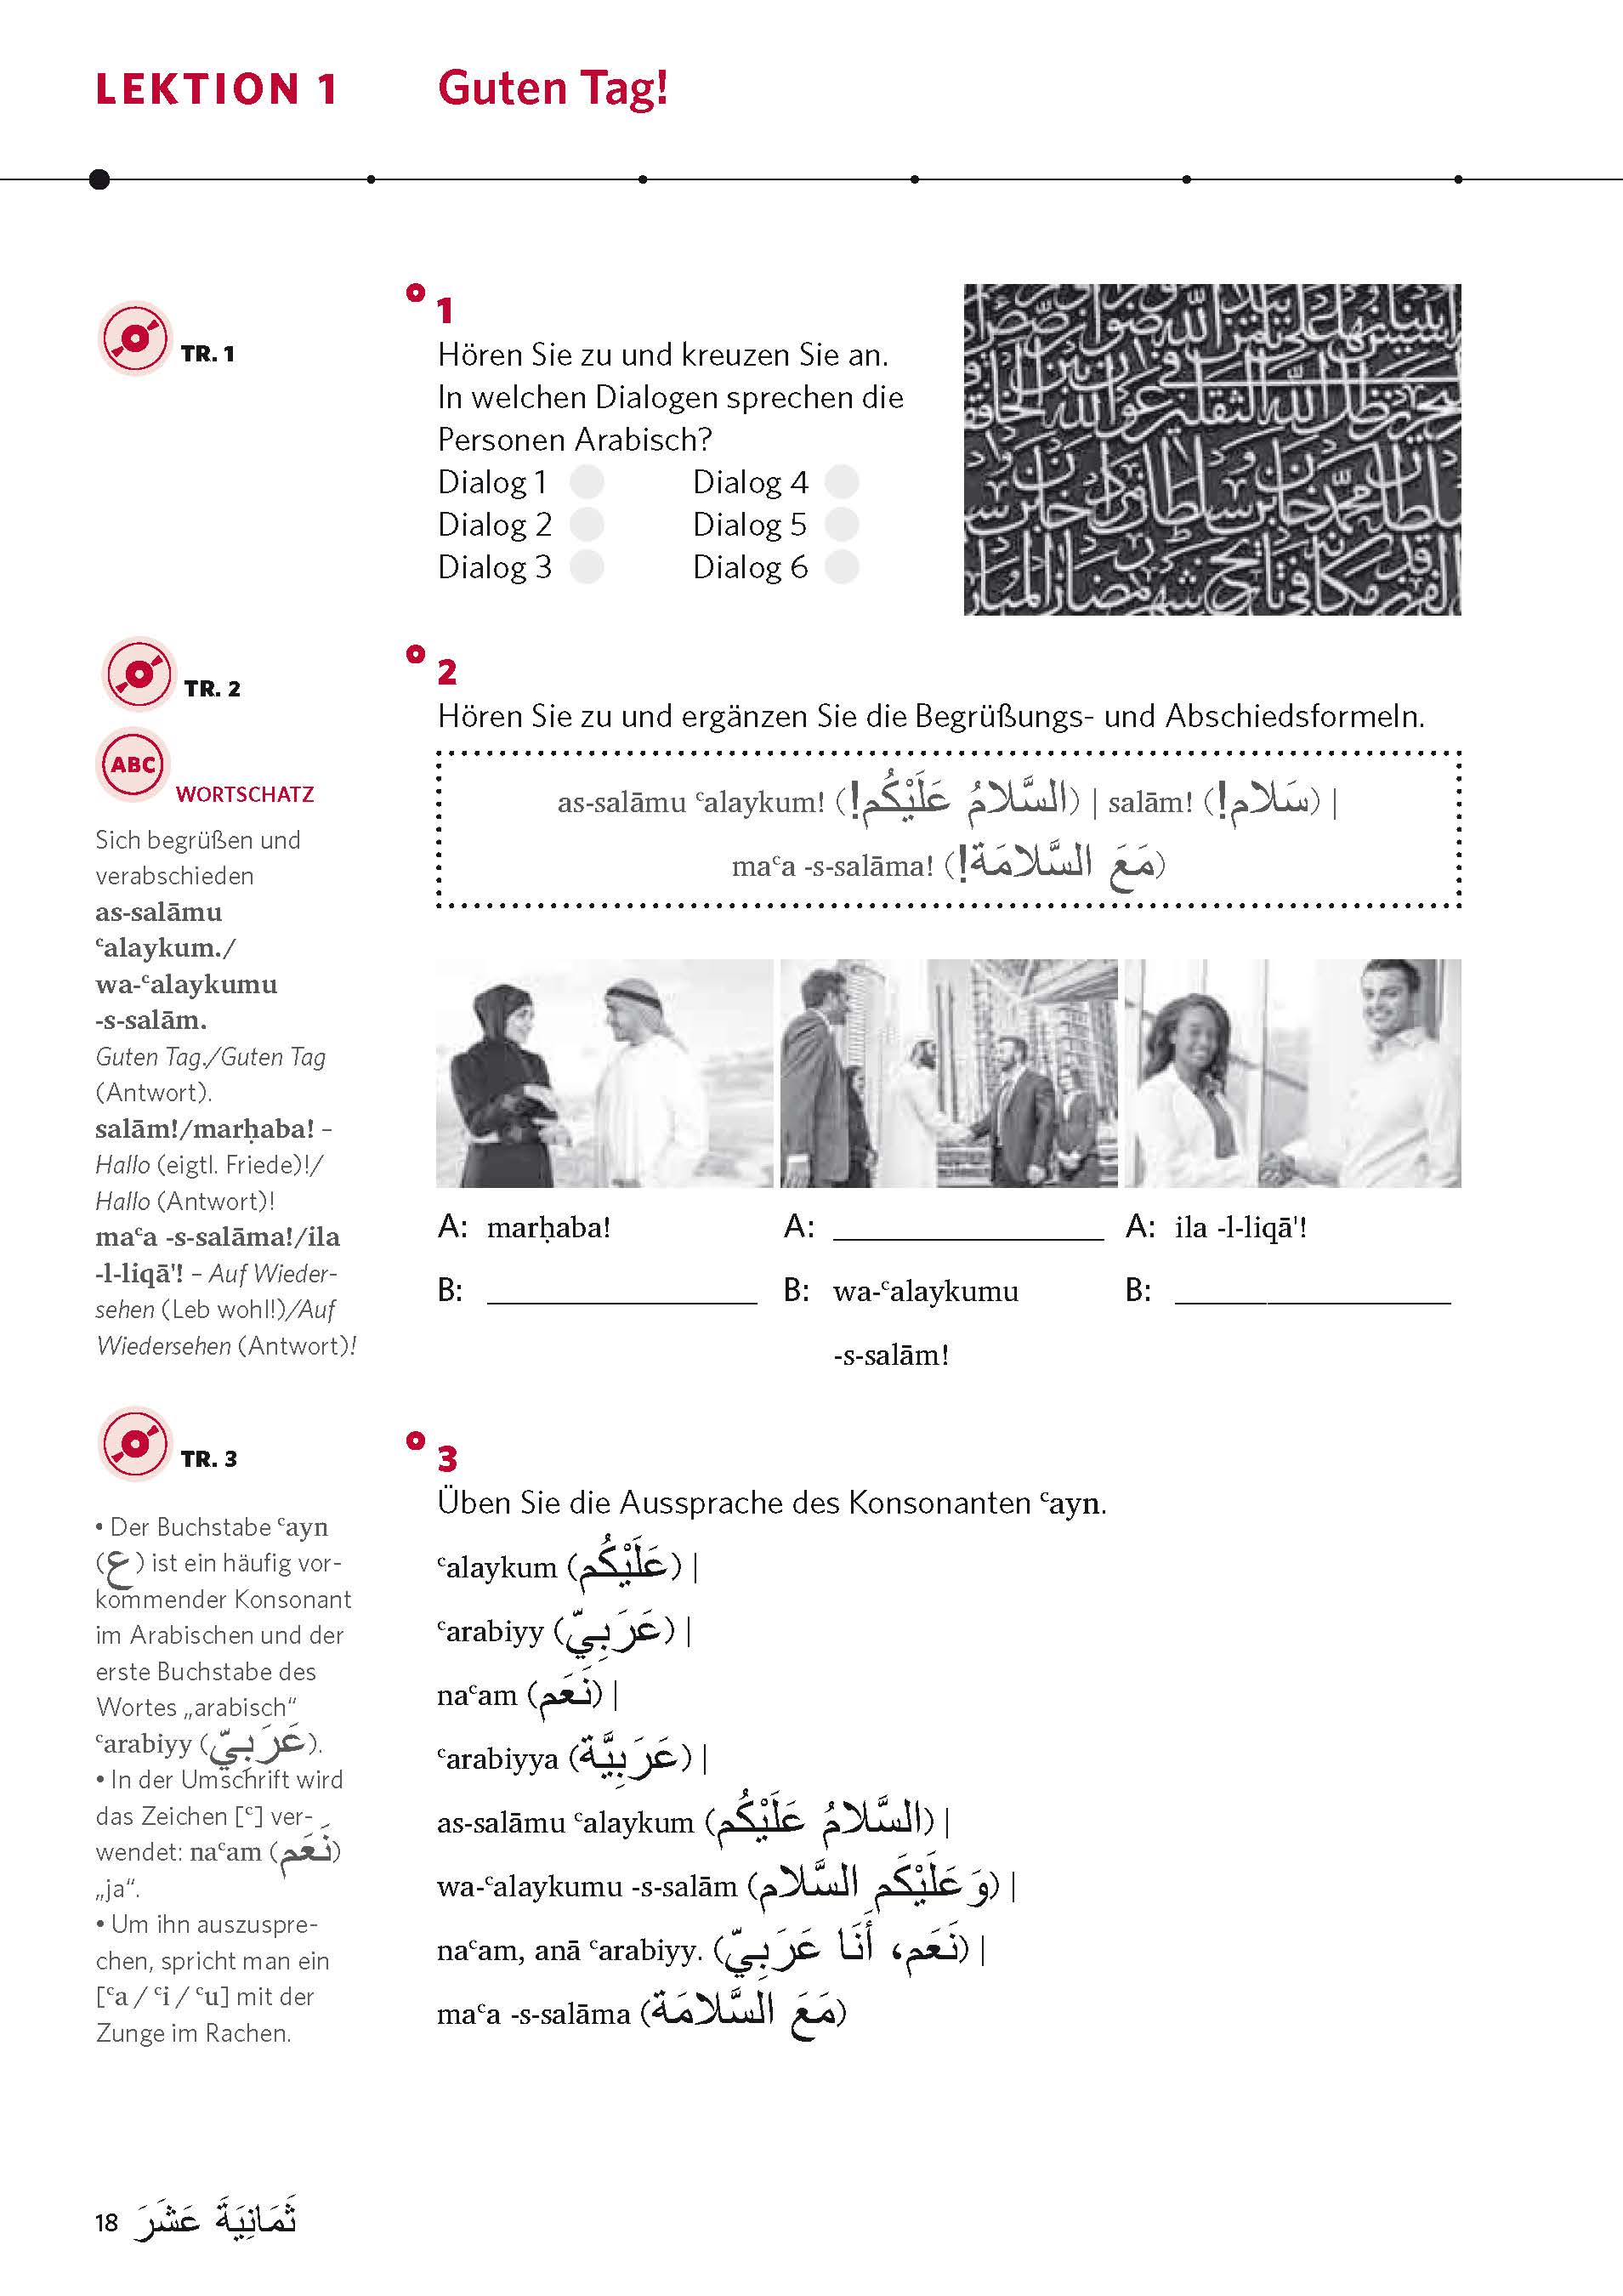 PONS Power-Sprachkurs Arabisch